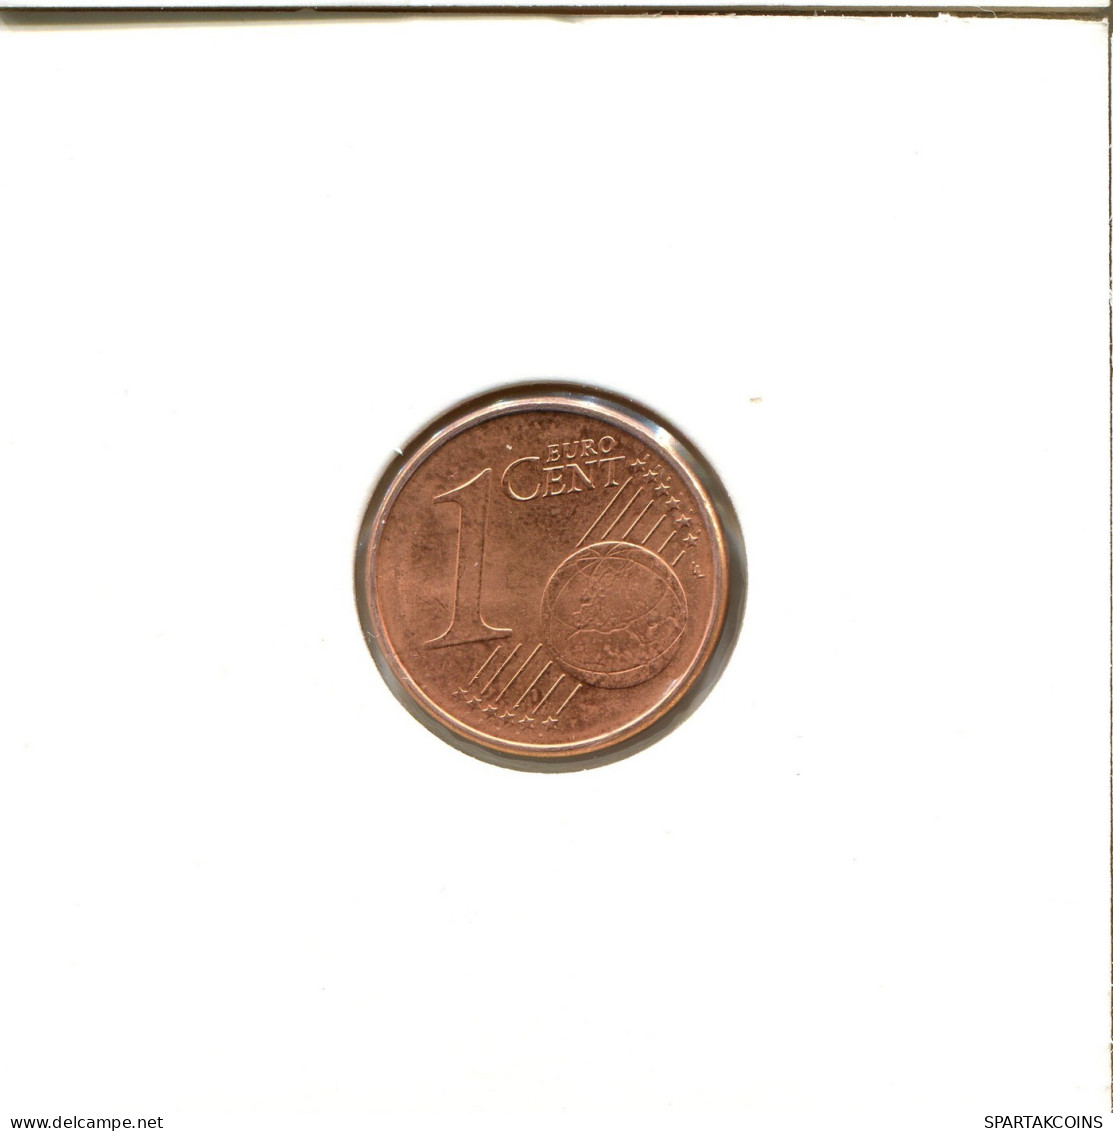 1 EURO CENT 2007 ALEMANIA Moneda GERMANY #EU131.E.A - Germania